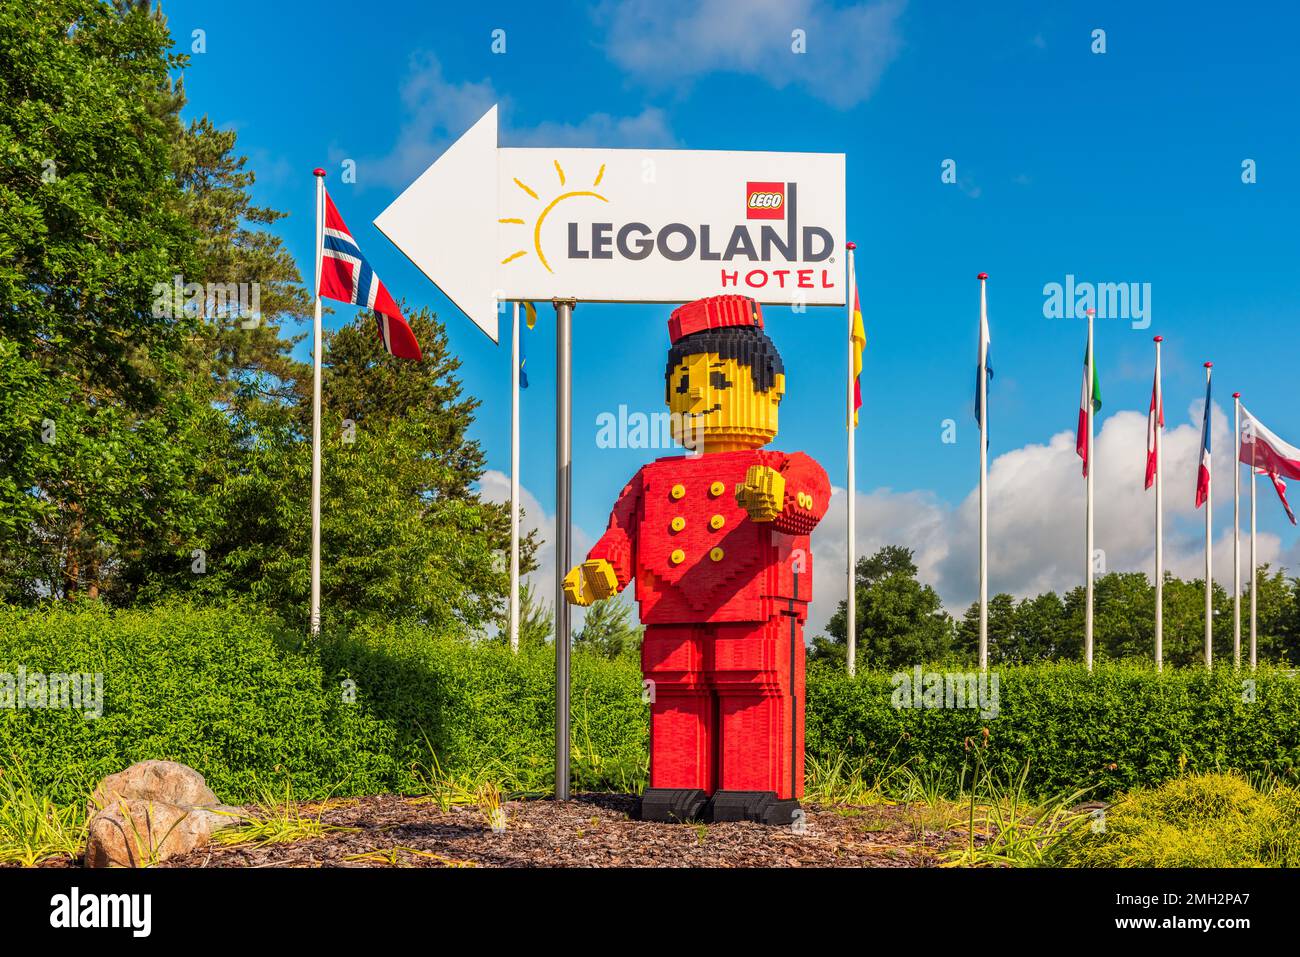 Cartello direzionale per Legoland Hotel a Billund, Danimarca, accompagnato da una gigantesca figura Lego Minifigure Foto Stock